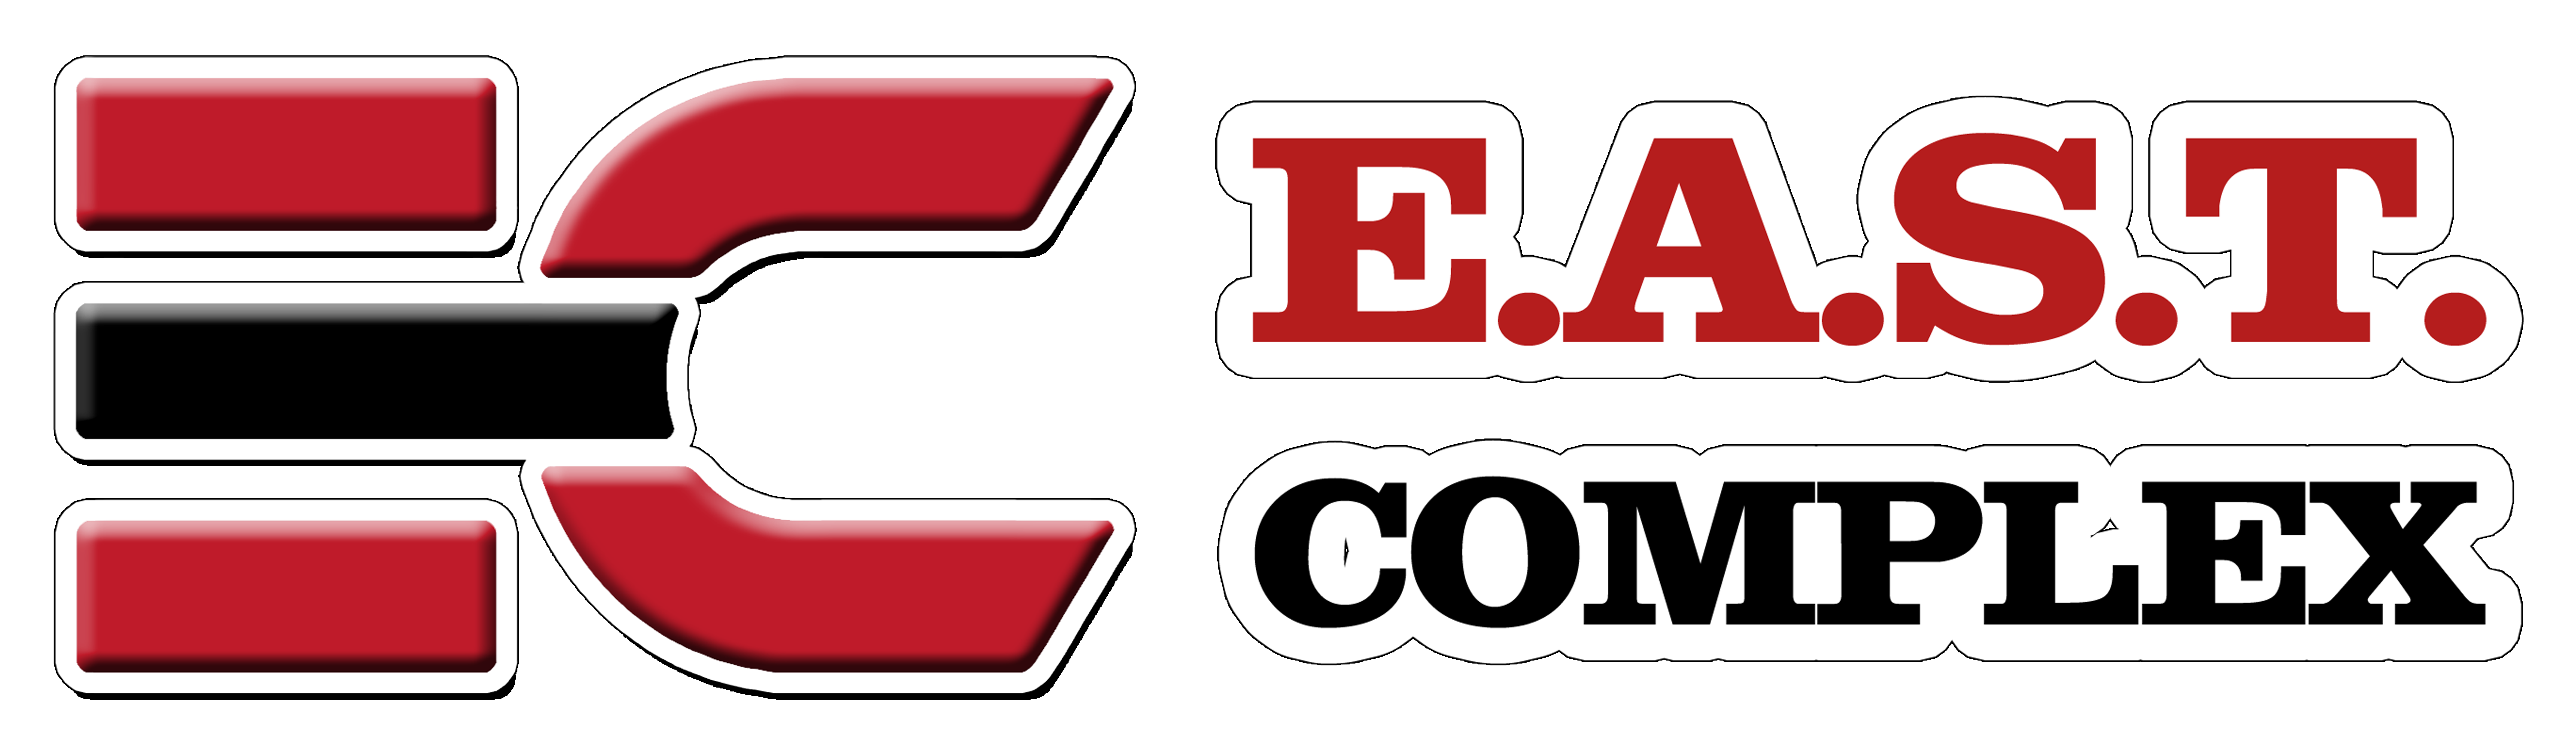 E.A.S.T. Complex logo